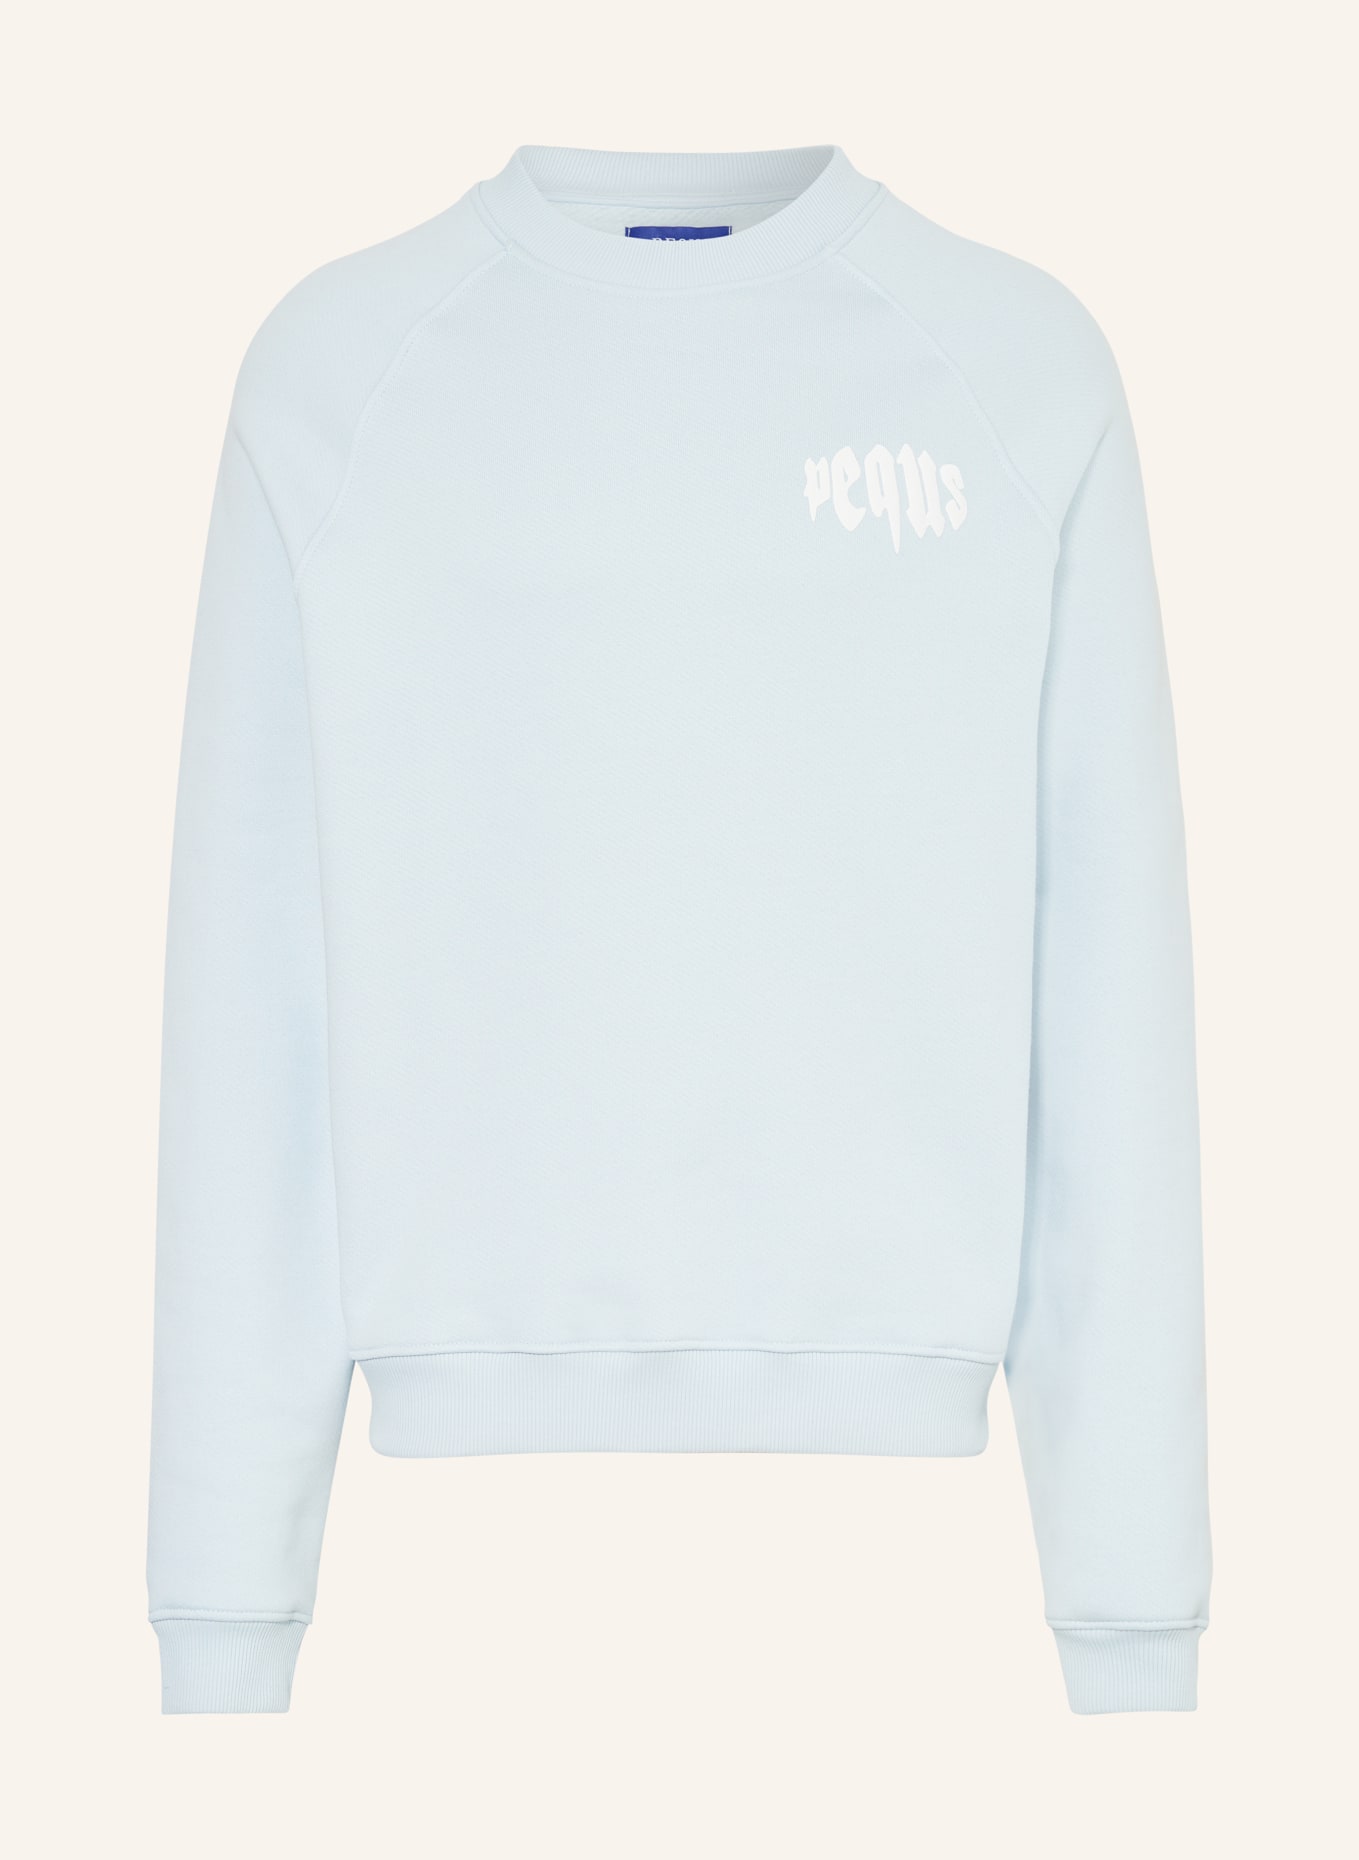 PEQUS Sweatshirt, Color: LIGHT BLUE (Image 1)